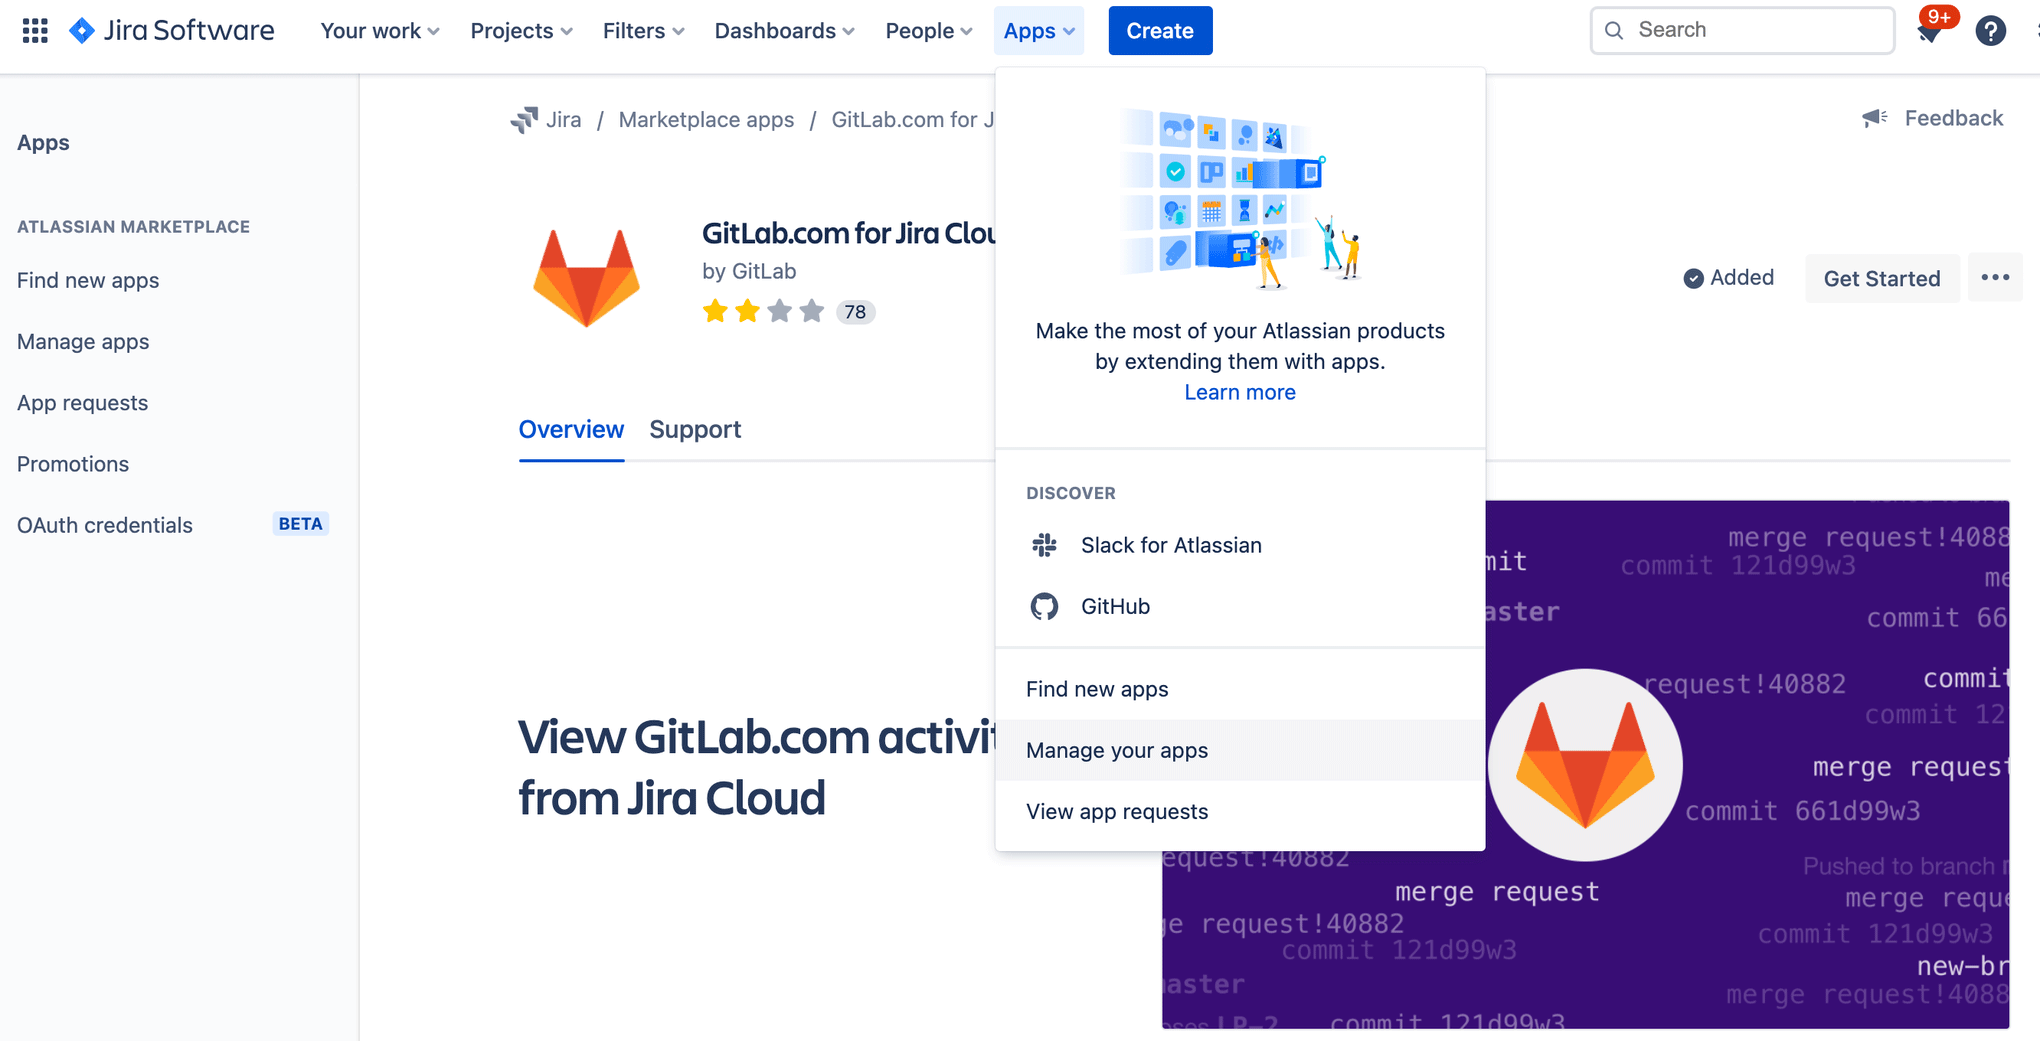 Okno modalne aplikacji GitLab w Jira Software z menu rozwijanym